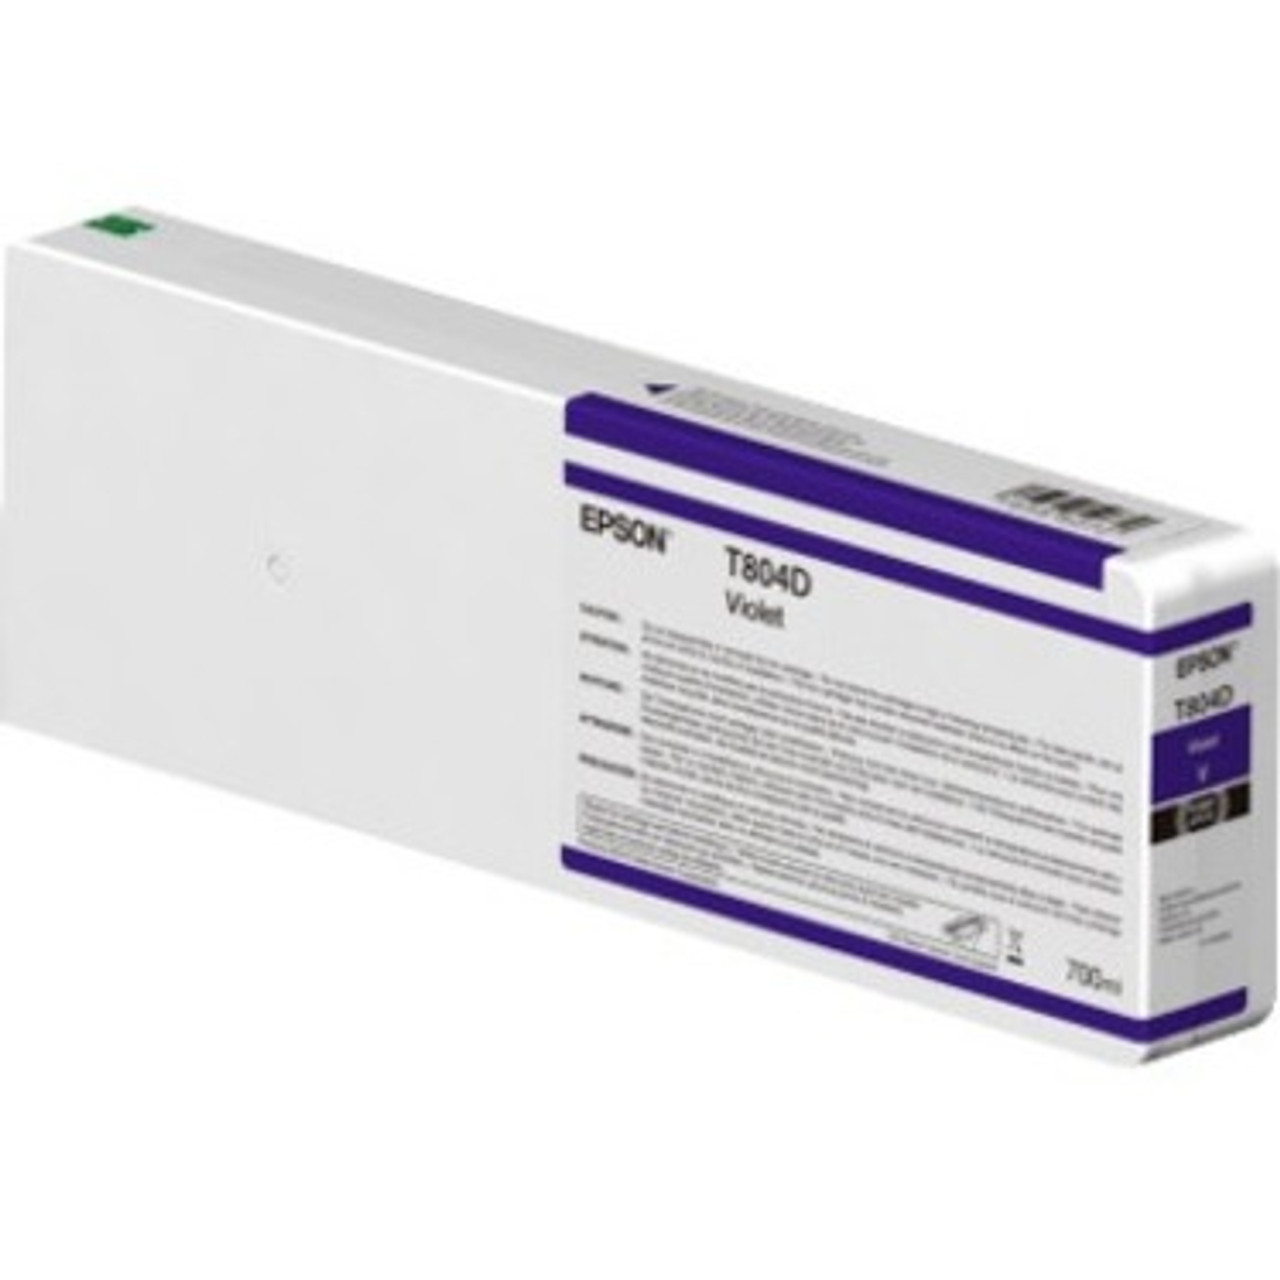 Epson UltraChrome HDX T804D00 Original Ink Cartridge - Violet - T804D00